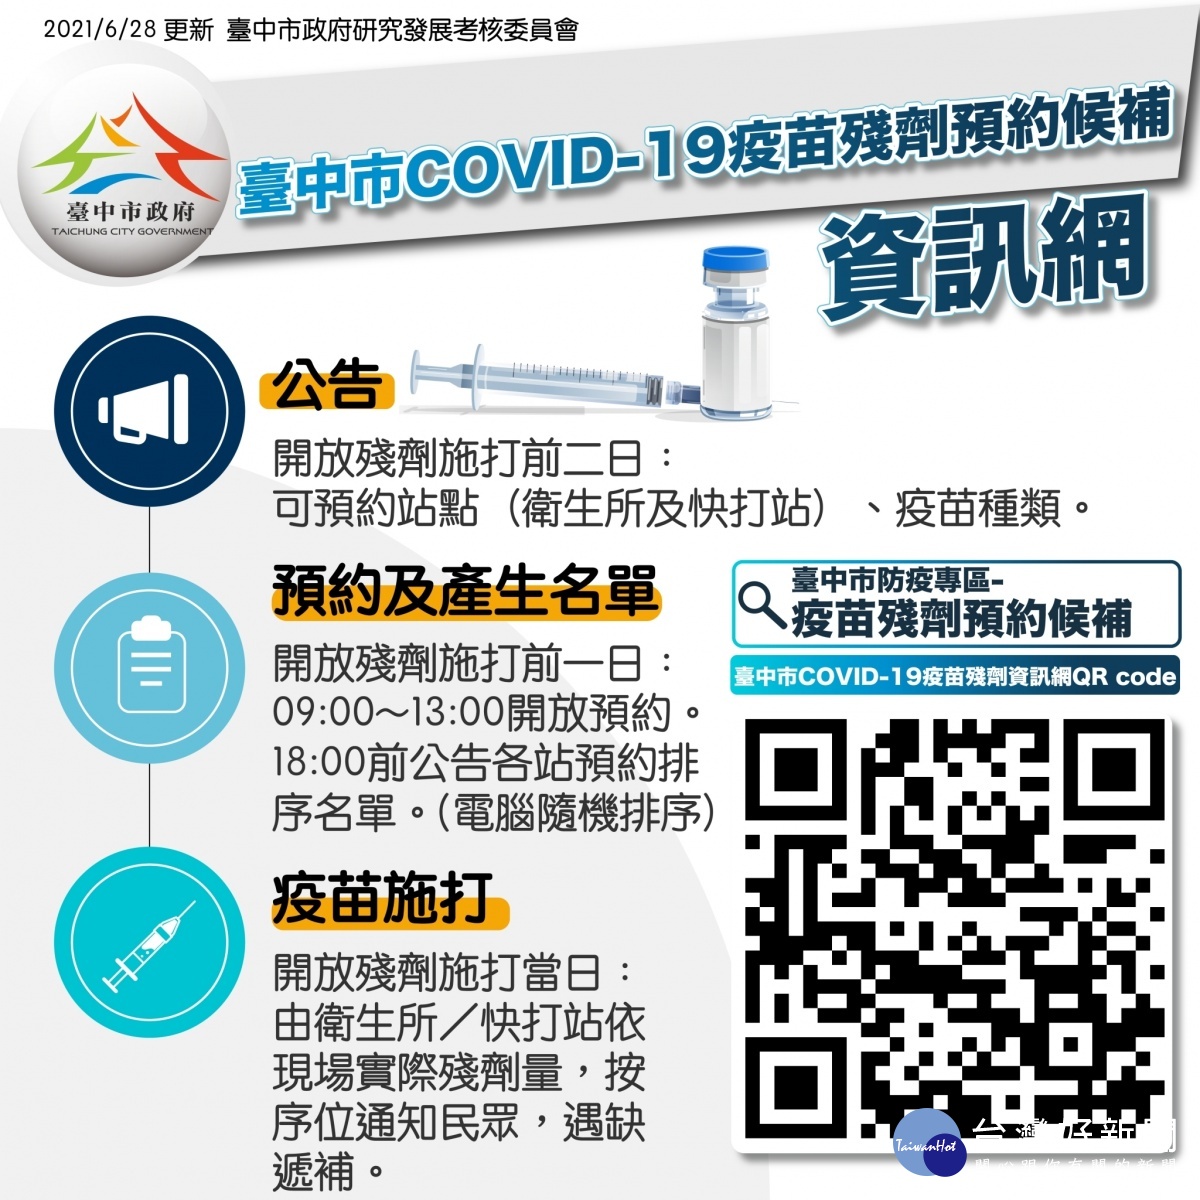 台中疫苗殘劑施打資訊網上線預約者接獲通知需30分鐘內報到 台灣好新聞taiwanhot Net